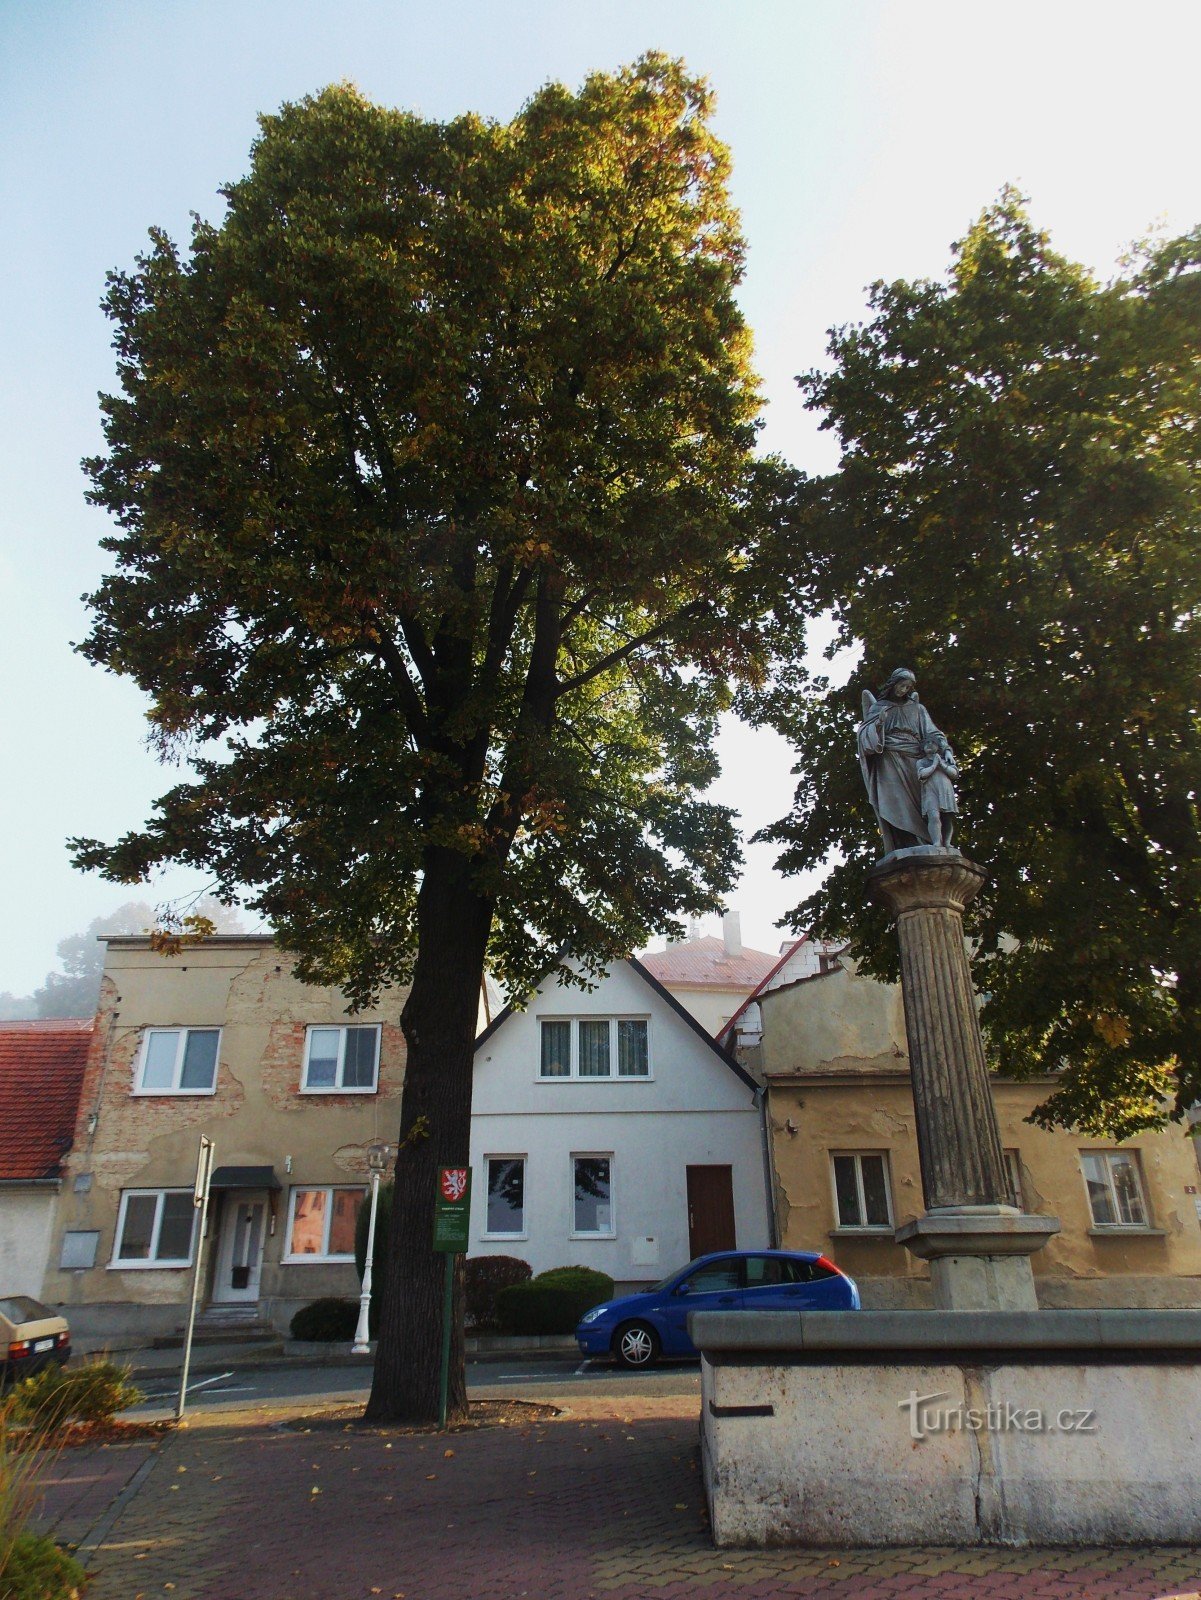 La fuente y el árbol conmemorativo en la plaza de Staré Jičín